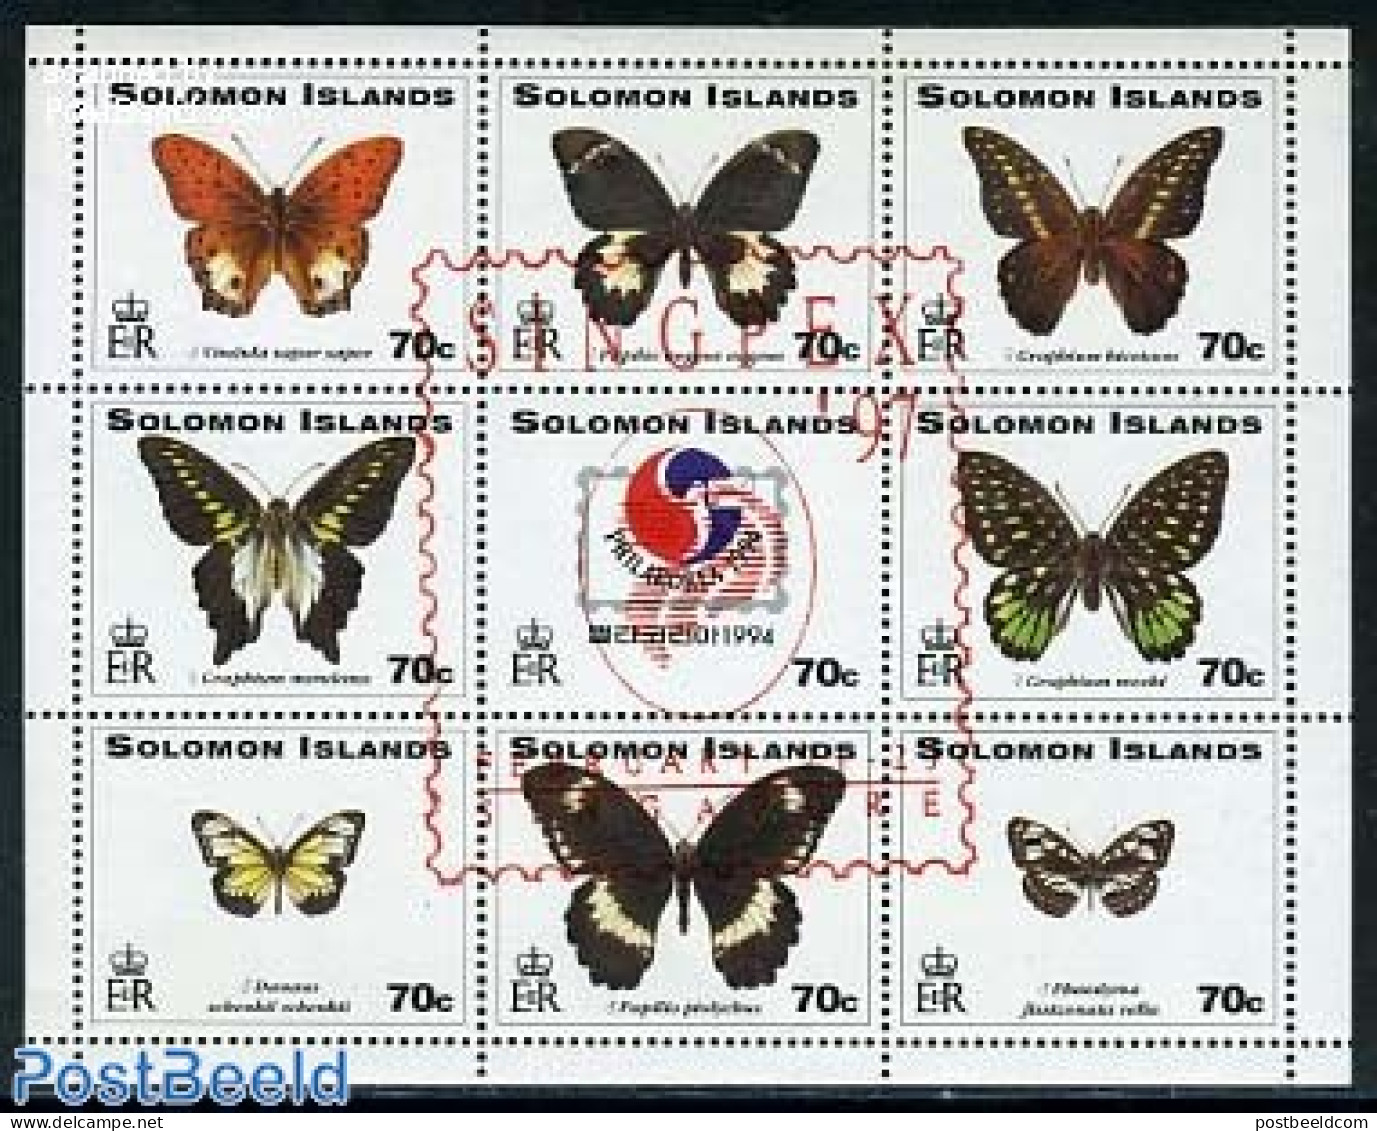 Solomon Islands 1997 Singpex, Butterflies 9v M/s, Mint NH, Nature - Butterflies - Philately - Solomon Islands (1978-...)